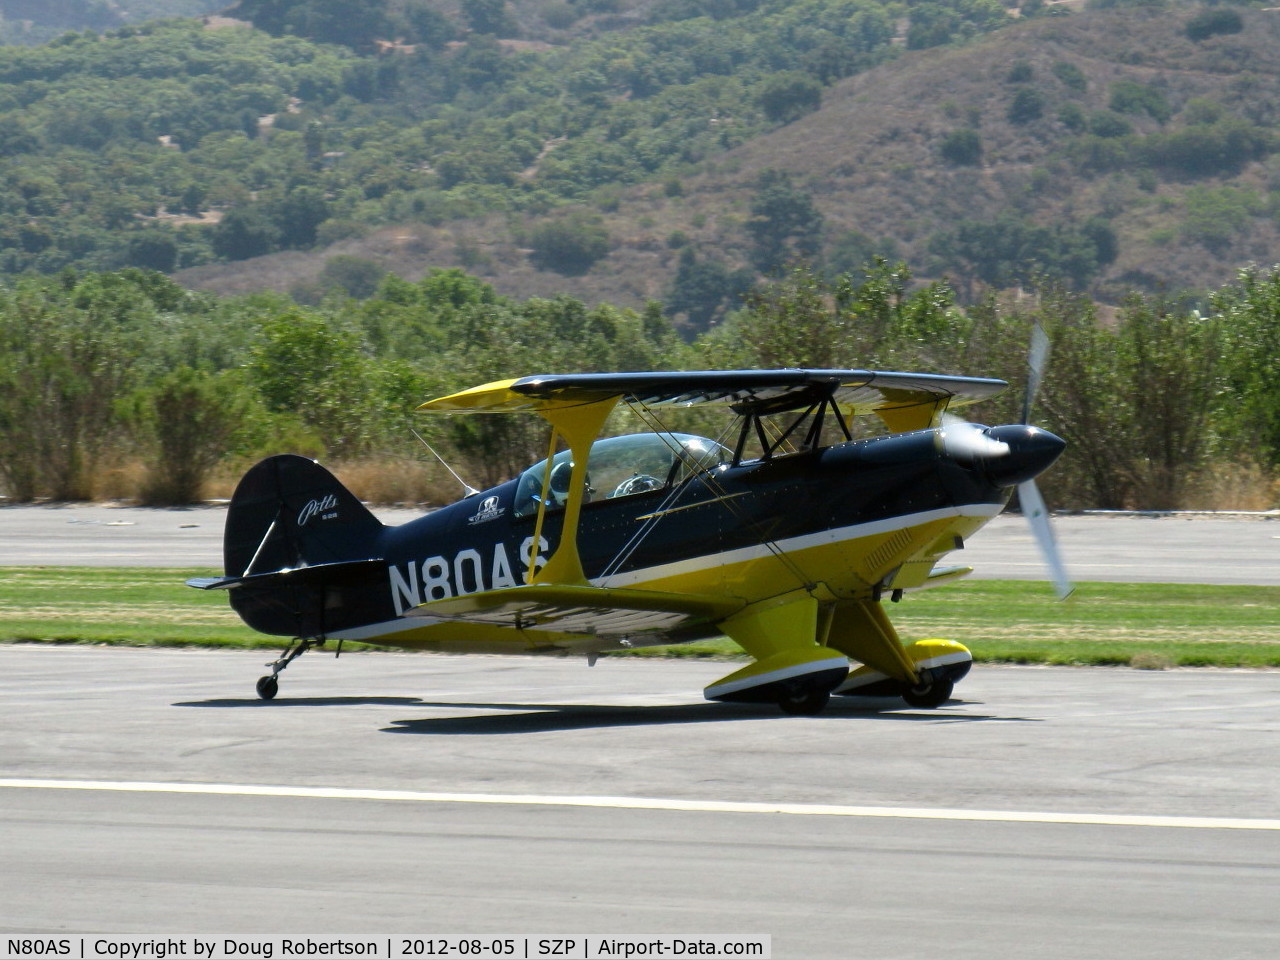 N80AS, 1992 Pitts S-2B Special C/N 5244, 1992 Pitts Aerobatics S-2B, advanced aerobatics trainer of CP Aviation, Lycoming AEIO-540, landing roll Rwy 22